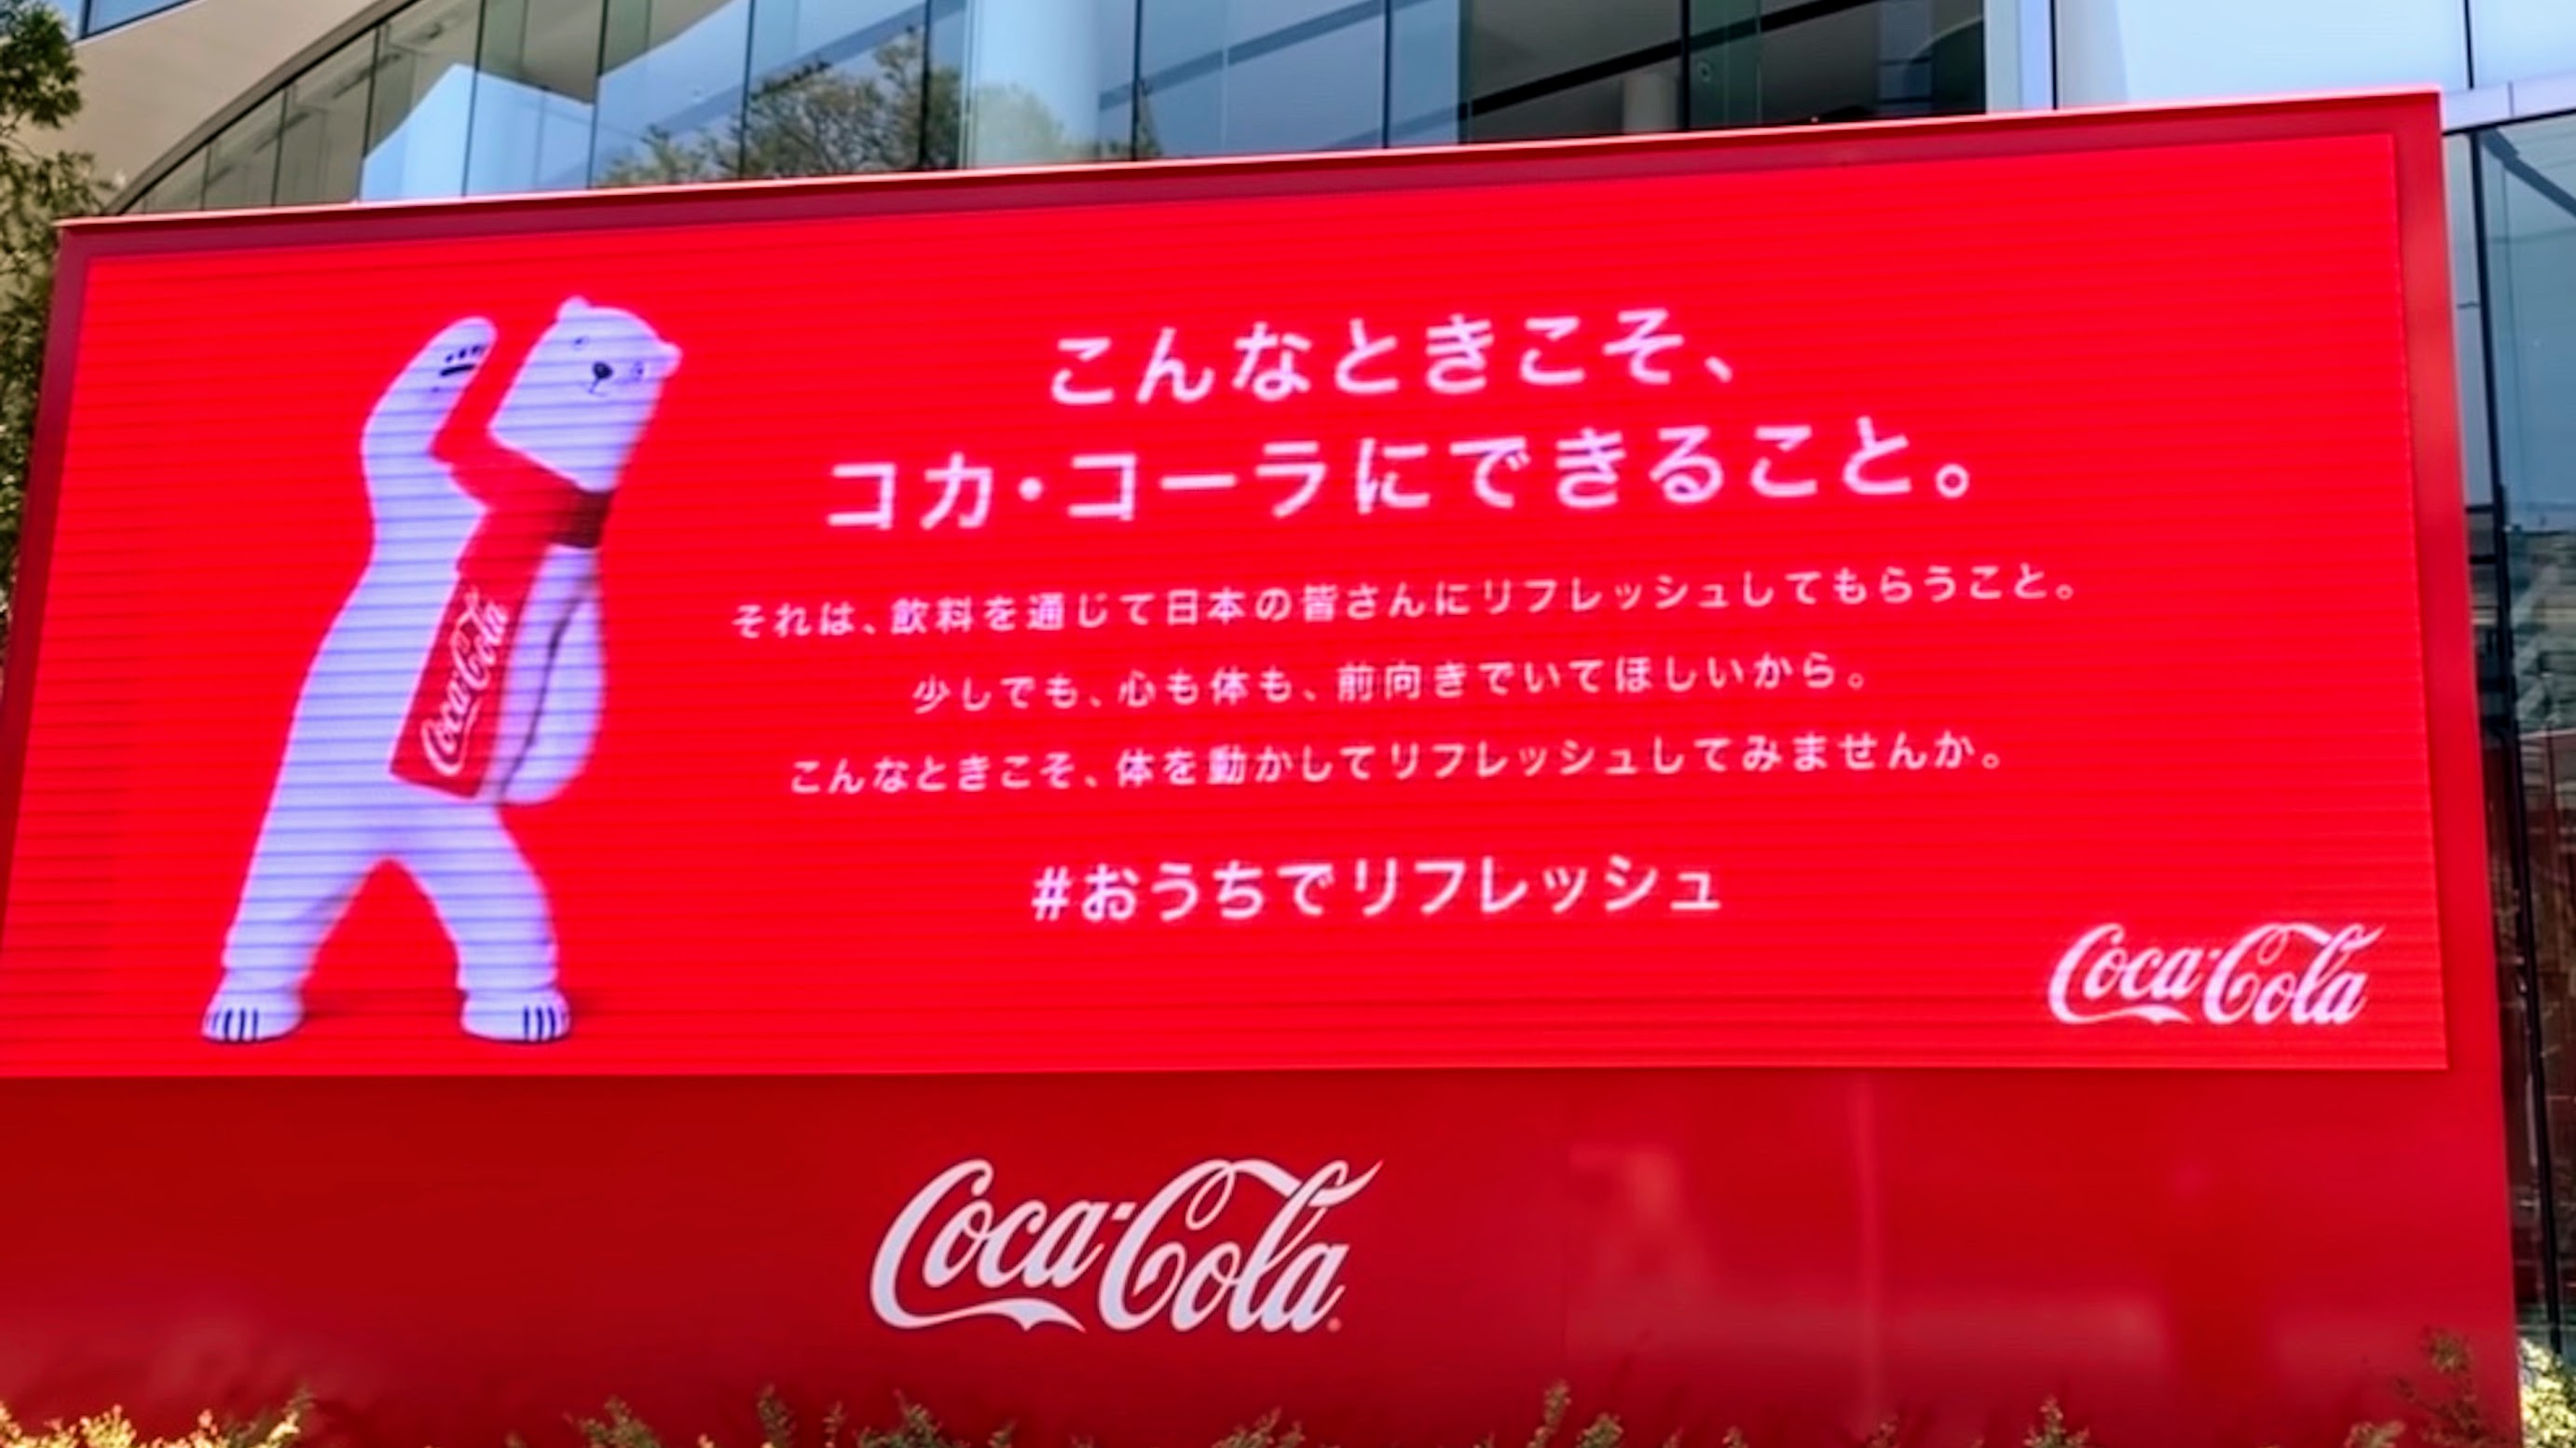 屋内エクササイズで心も体も前向きになろう 日本コカ コーラの提案 日本食糧新聞電子版